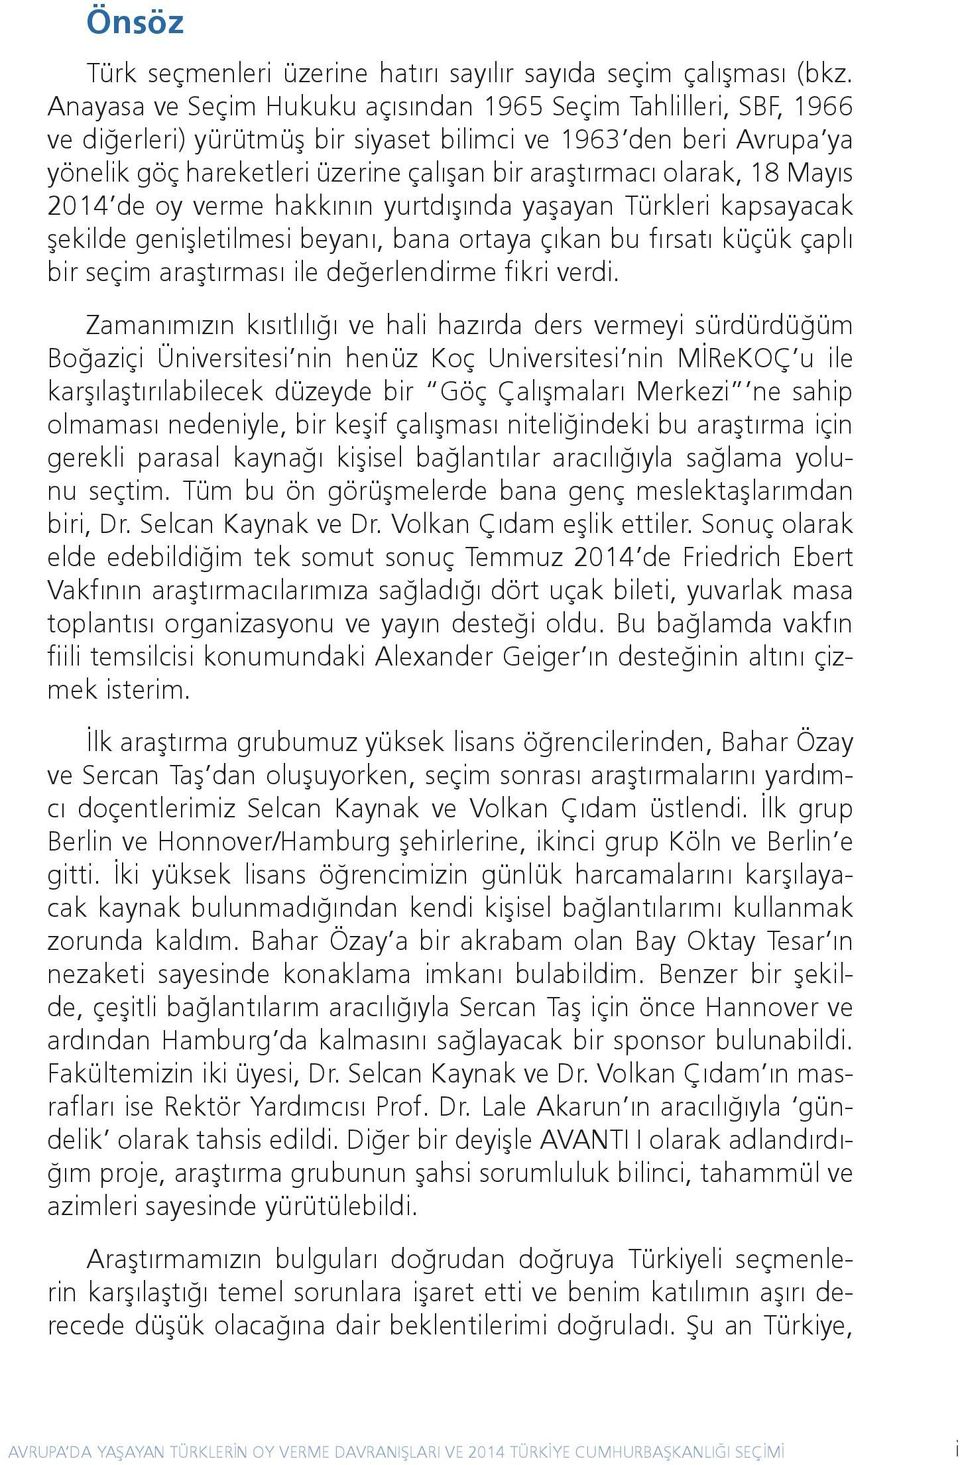 olarak, 18 Mayıs 2014 de oy verme hakkının yurtdışında yaşayan Türkleri kapsayacak şekilde genişletilmesi beyanı, bana ortaya çıkan bu fırsatı küçük çaplı bir seçim araştırması ile değerlendirme